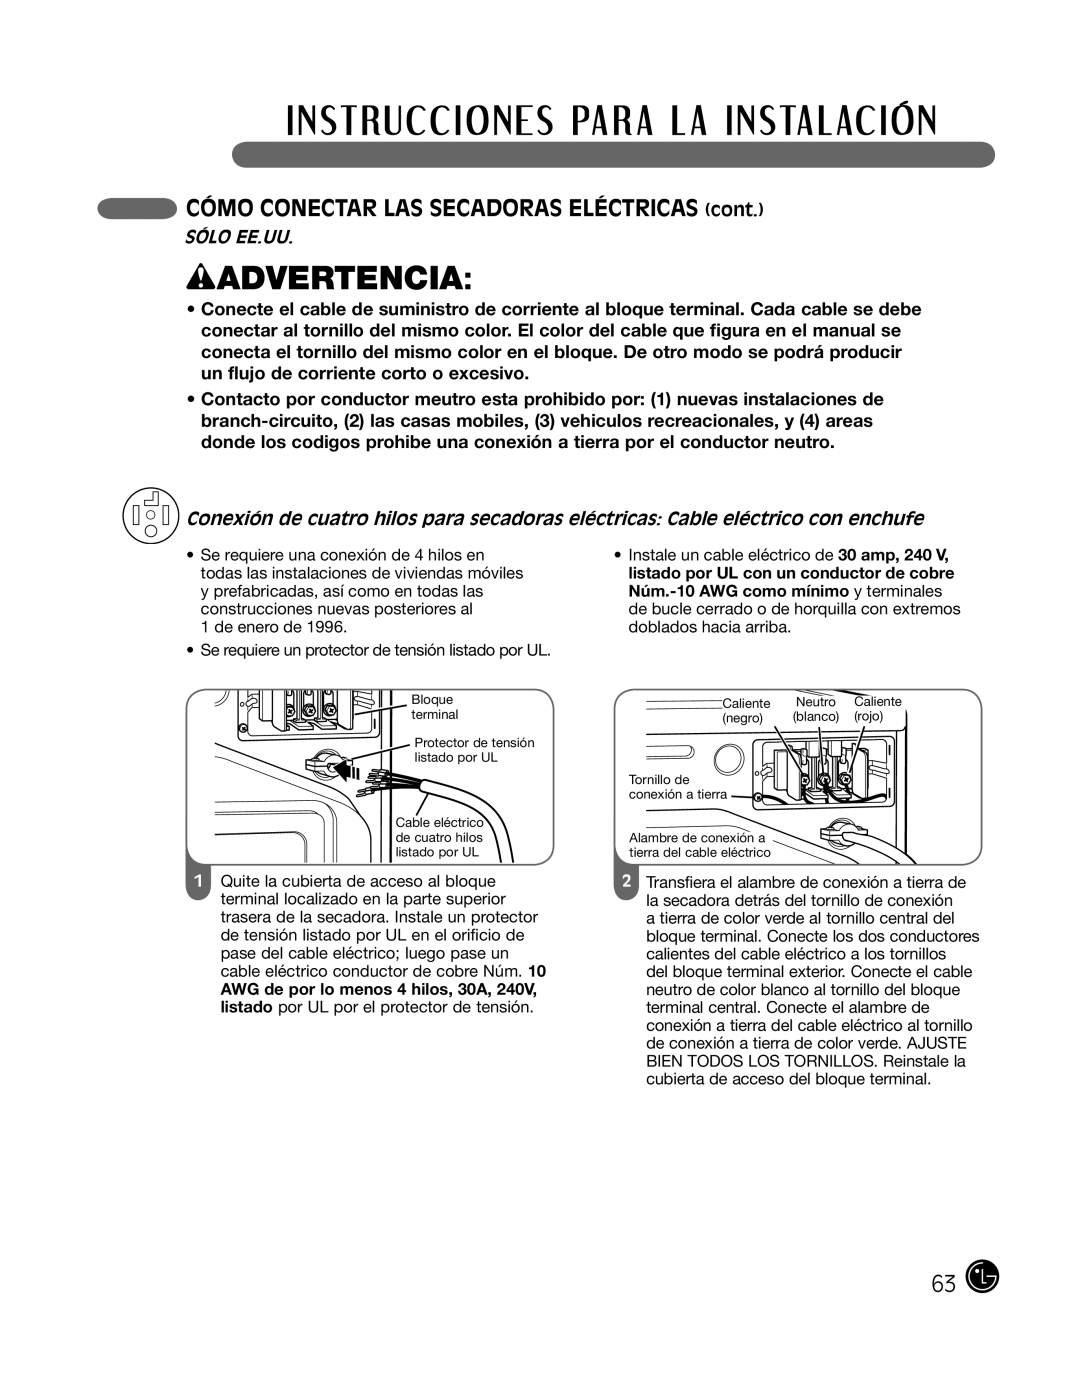 LG Electronics P154 manual wADVERTENCIA, CÓMO CONECTAR LAS SECADORAS ELÉCTRICAS cont, Sólo Ee.Uu 